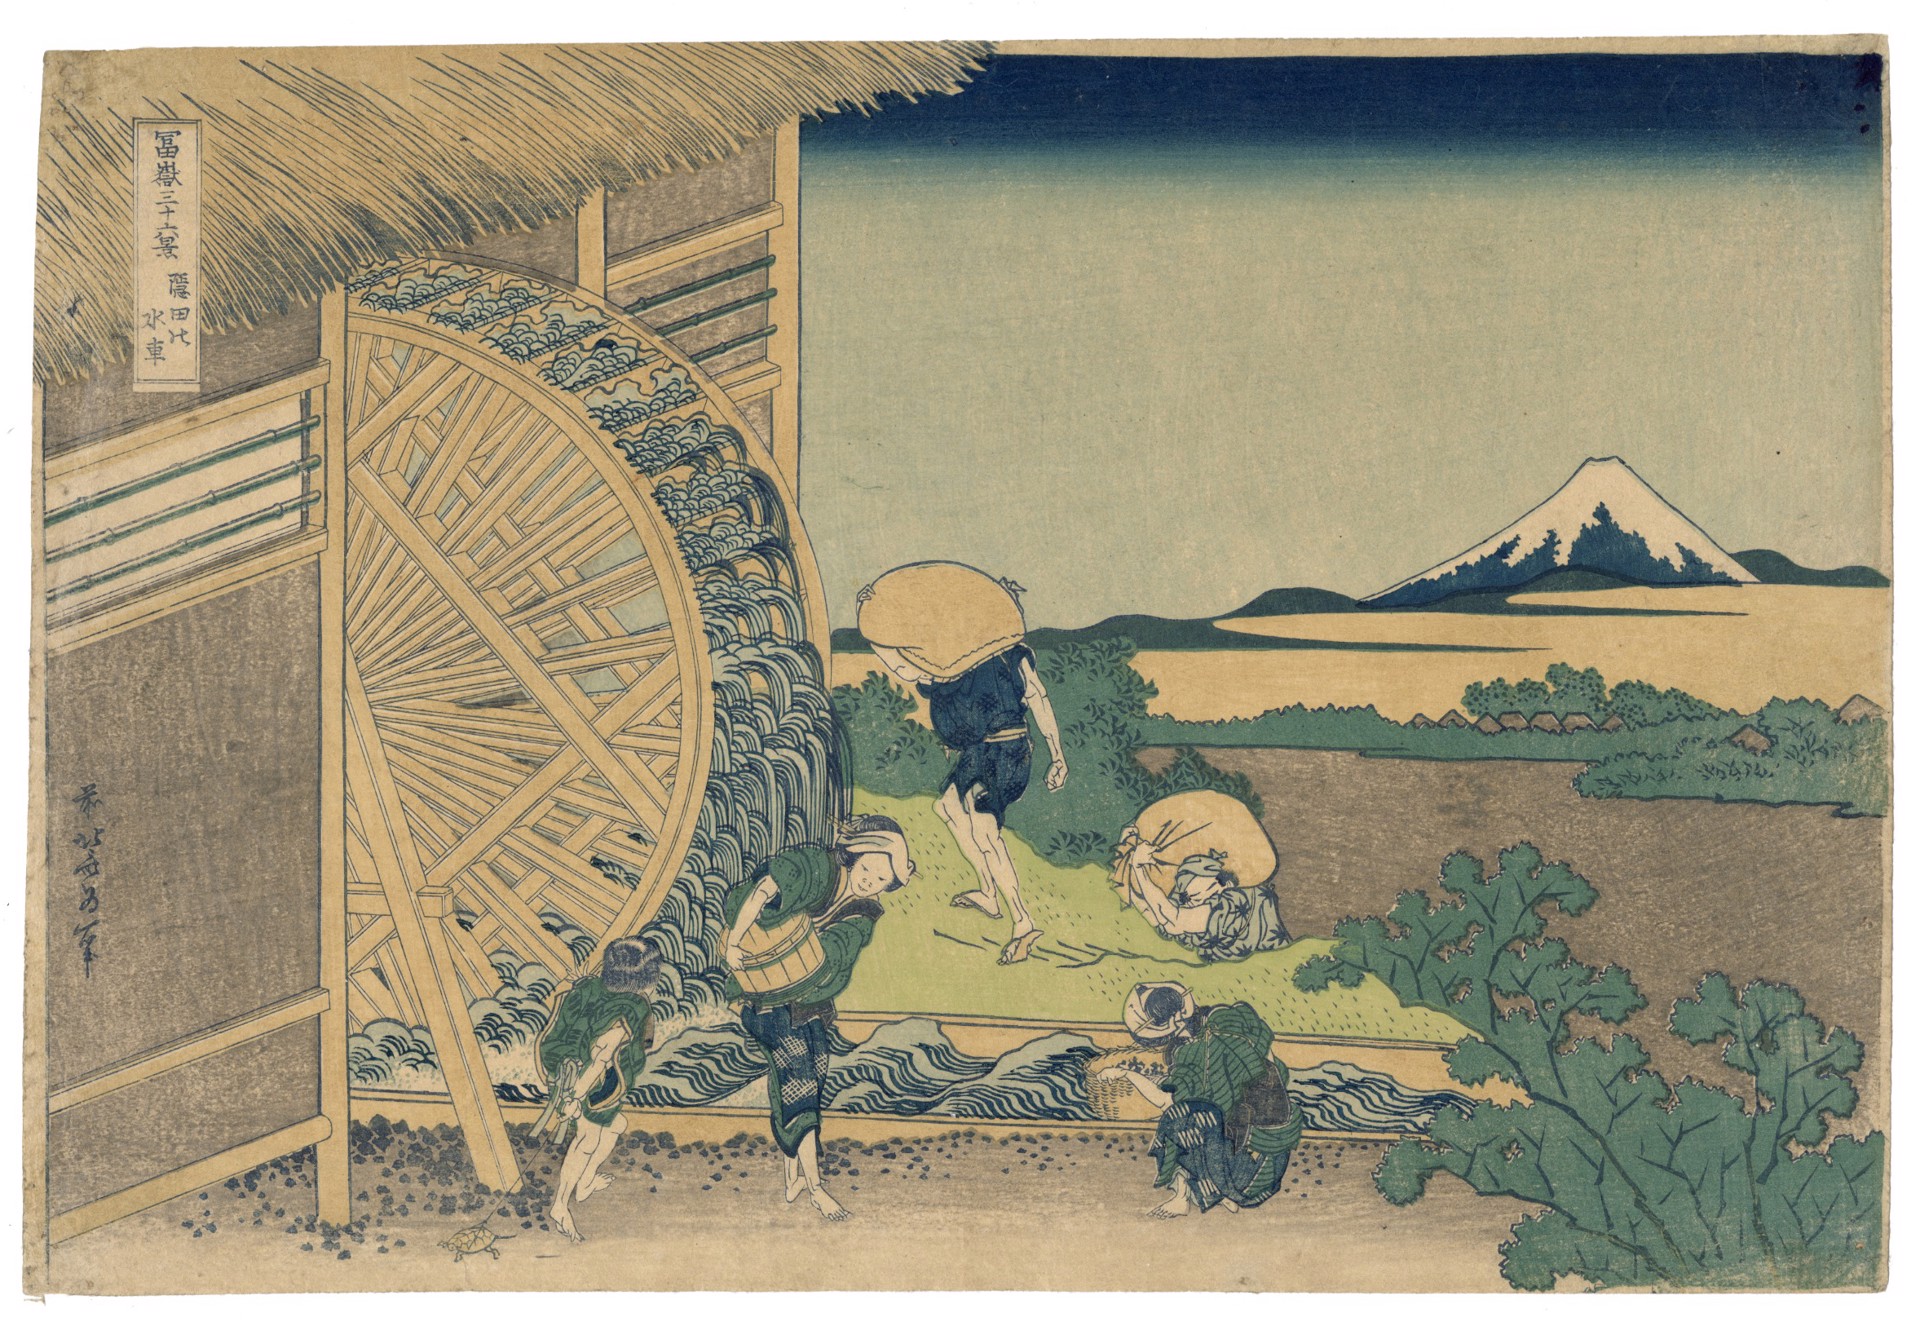 Waterwheel at Onden by Hokusai